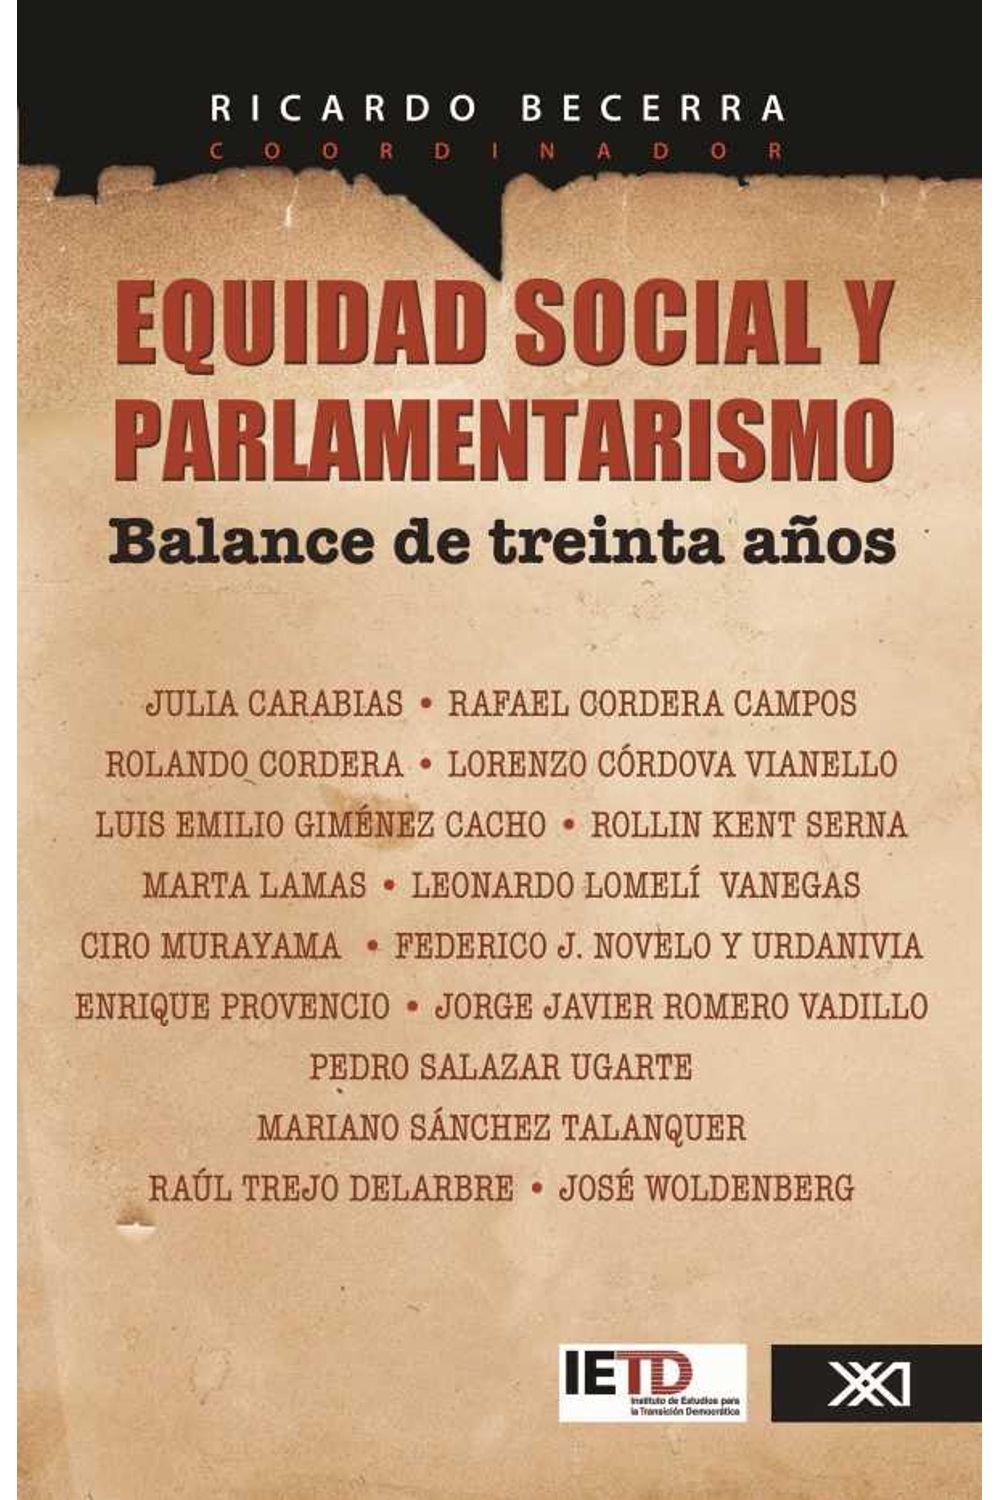 bw-equidad-social-y-parlamentarismo-balance-de-treinta-antildeos-siglo-xxi-editores-mxico-9786070304019